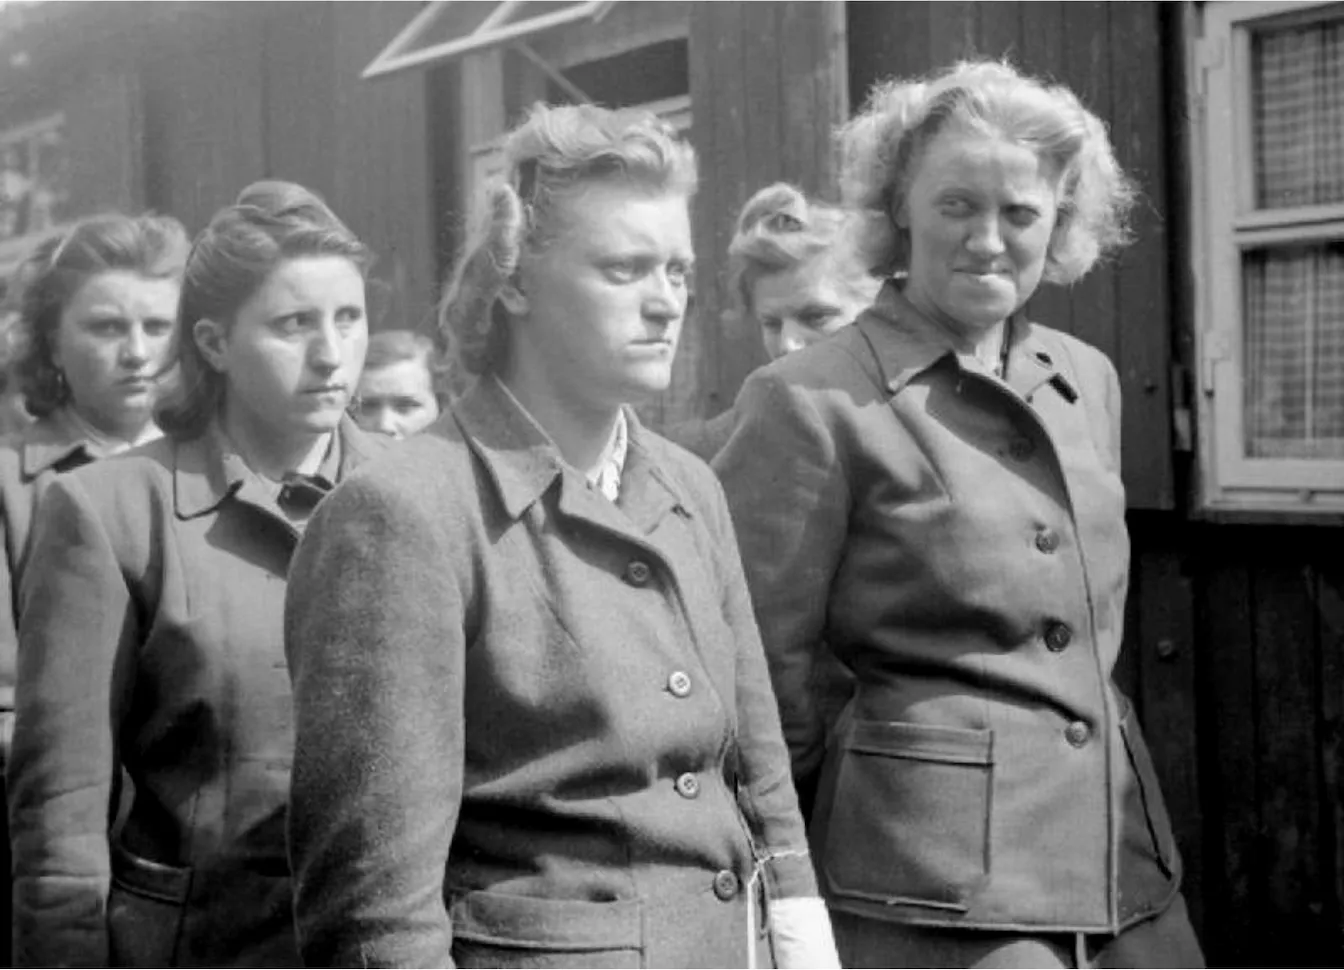 Les guardianes del camp de concentració de Bergen-Belsen, a la Baixa Saxònia, detingudes per les tropes britàniques